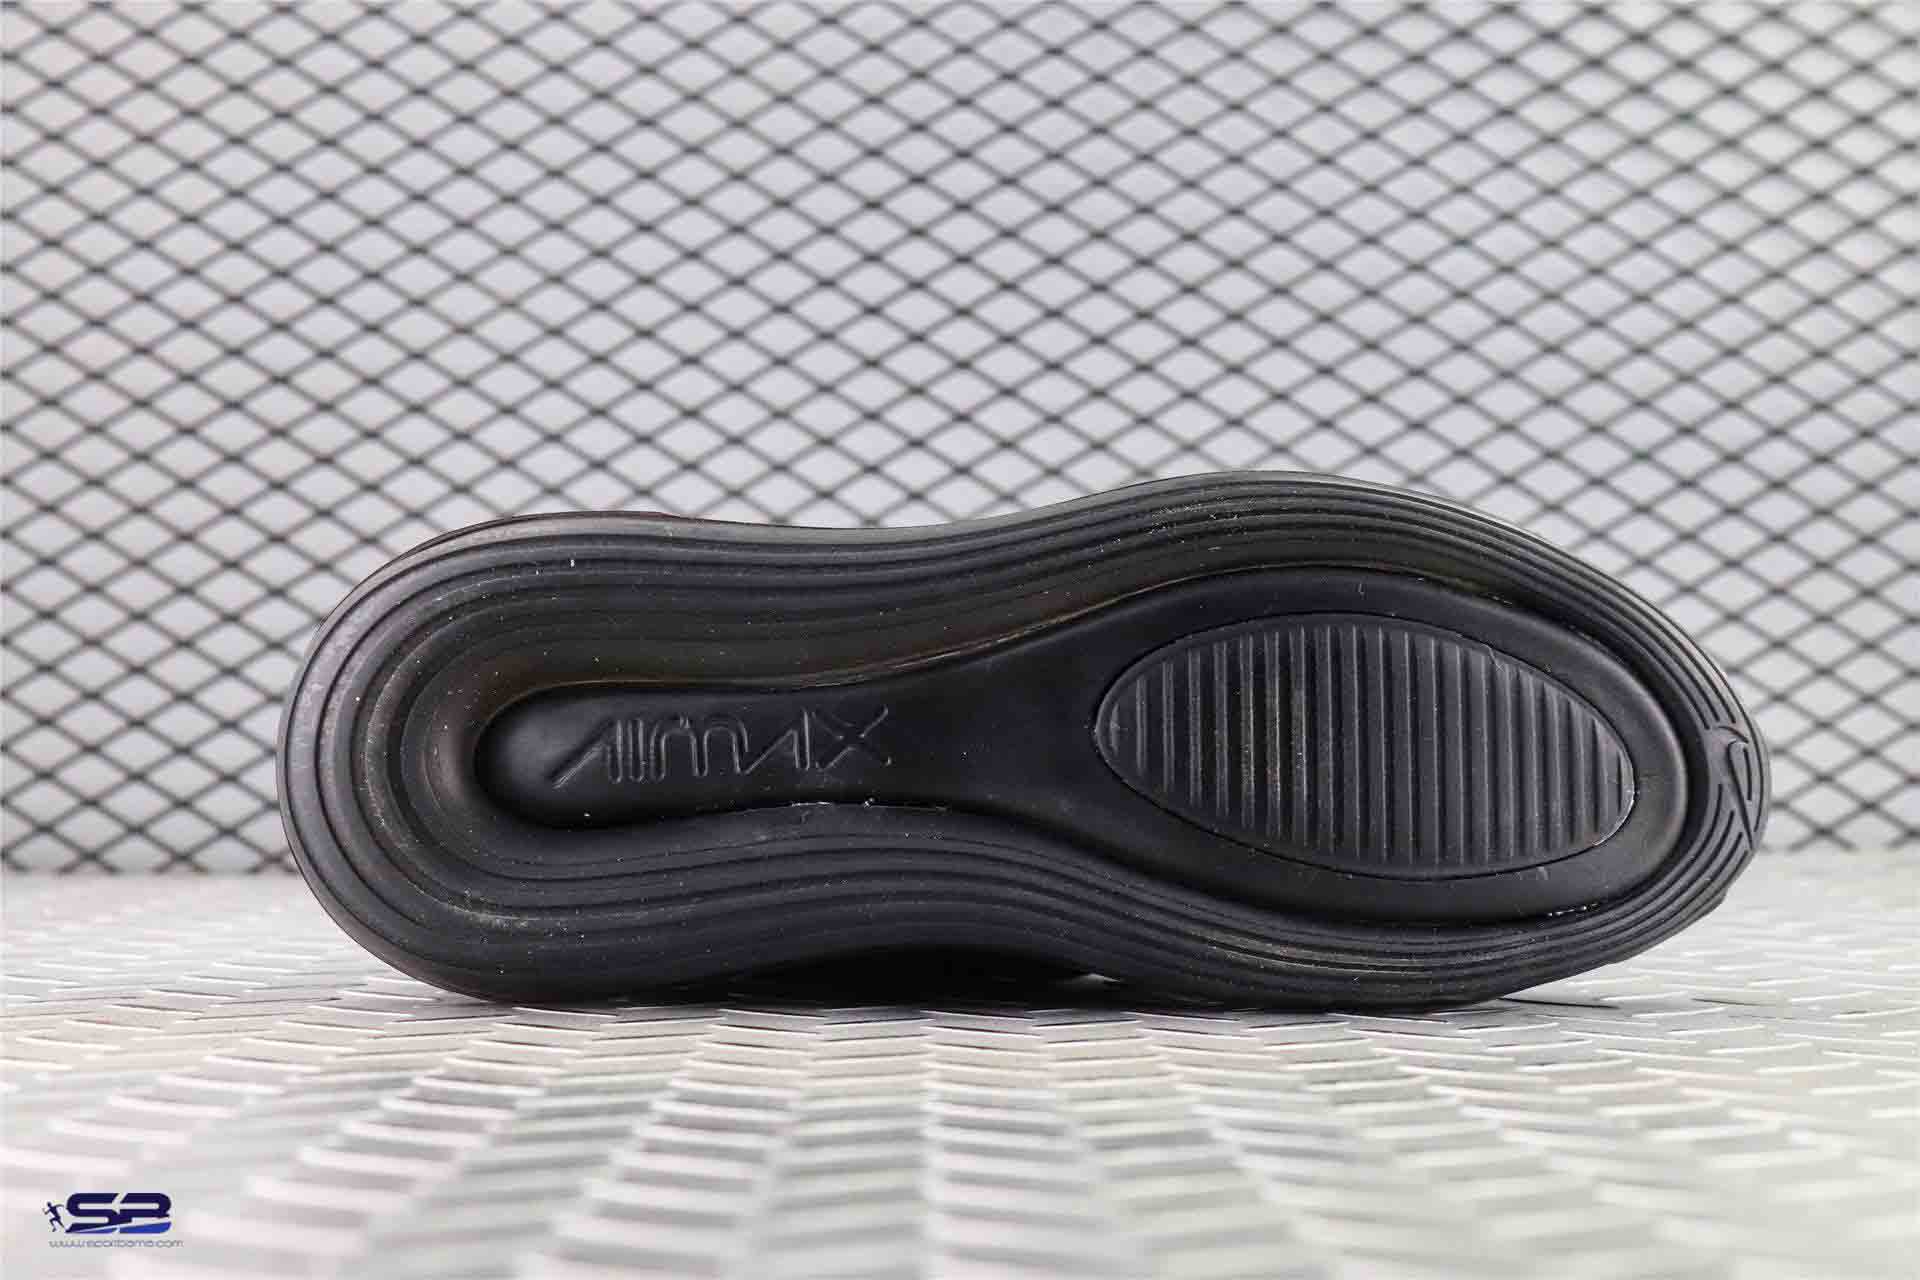  خرید  کفش کتانی بندی نایک ایرمکس 720 مخصوص پیاده روی طولانی و دویدن